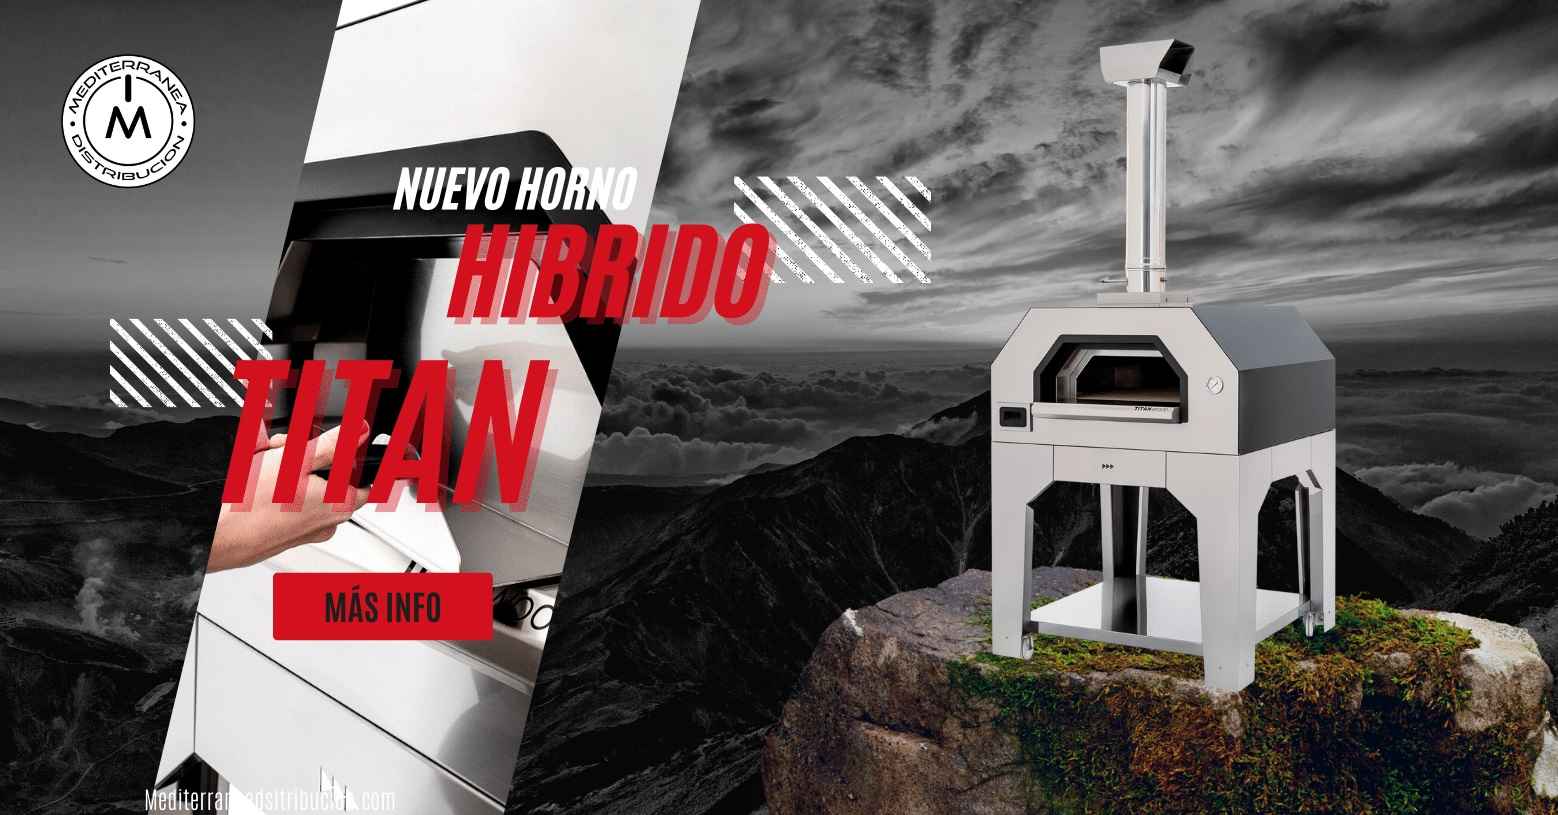 Horno Hibrido Titan-Mediterranea Distribucion-